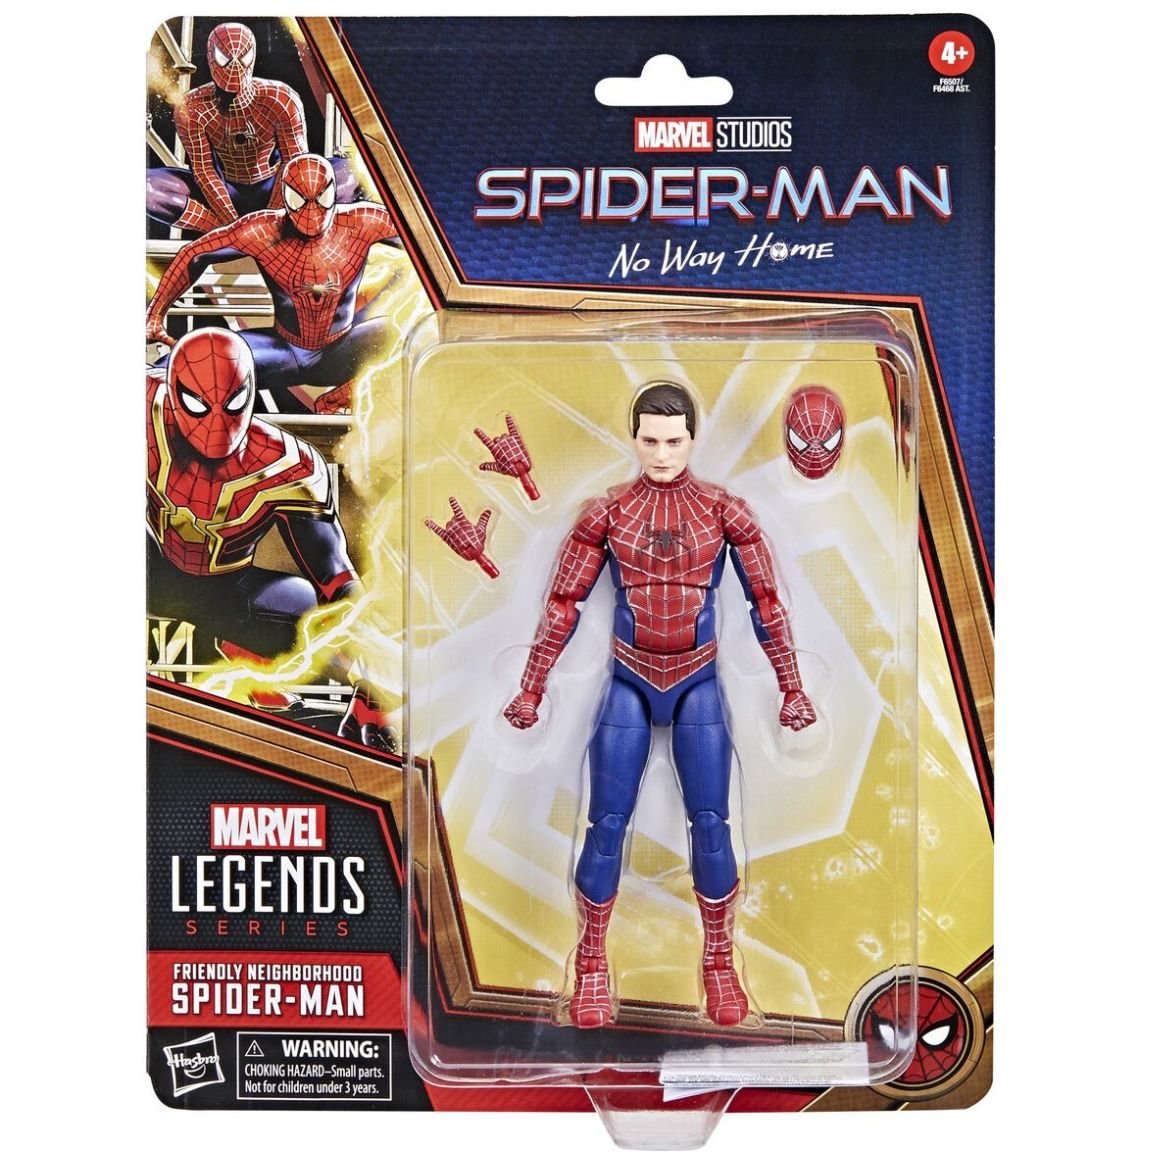 Juguetes de Spiderman y muñecos para regalar